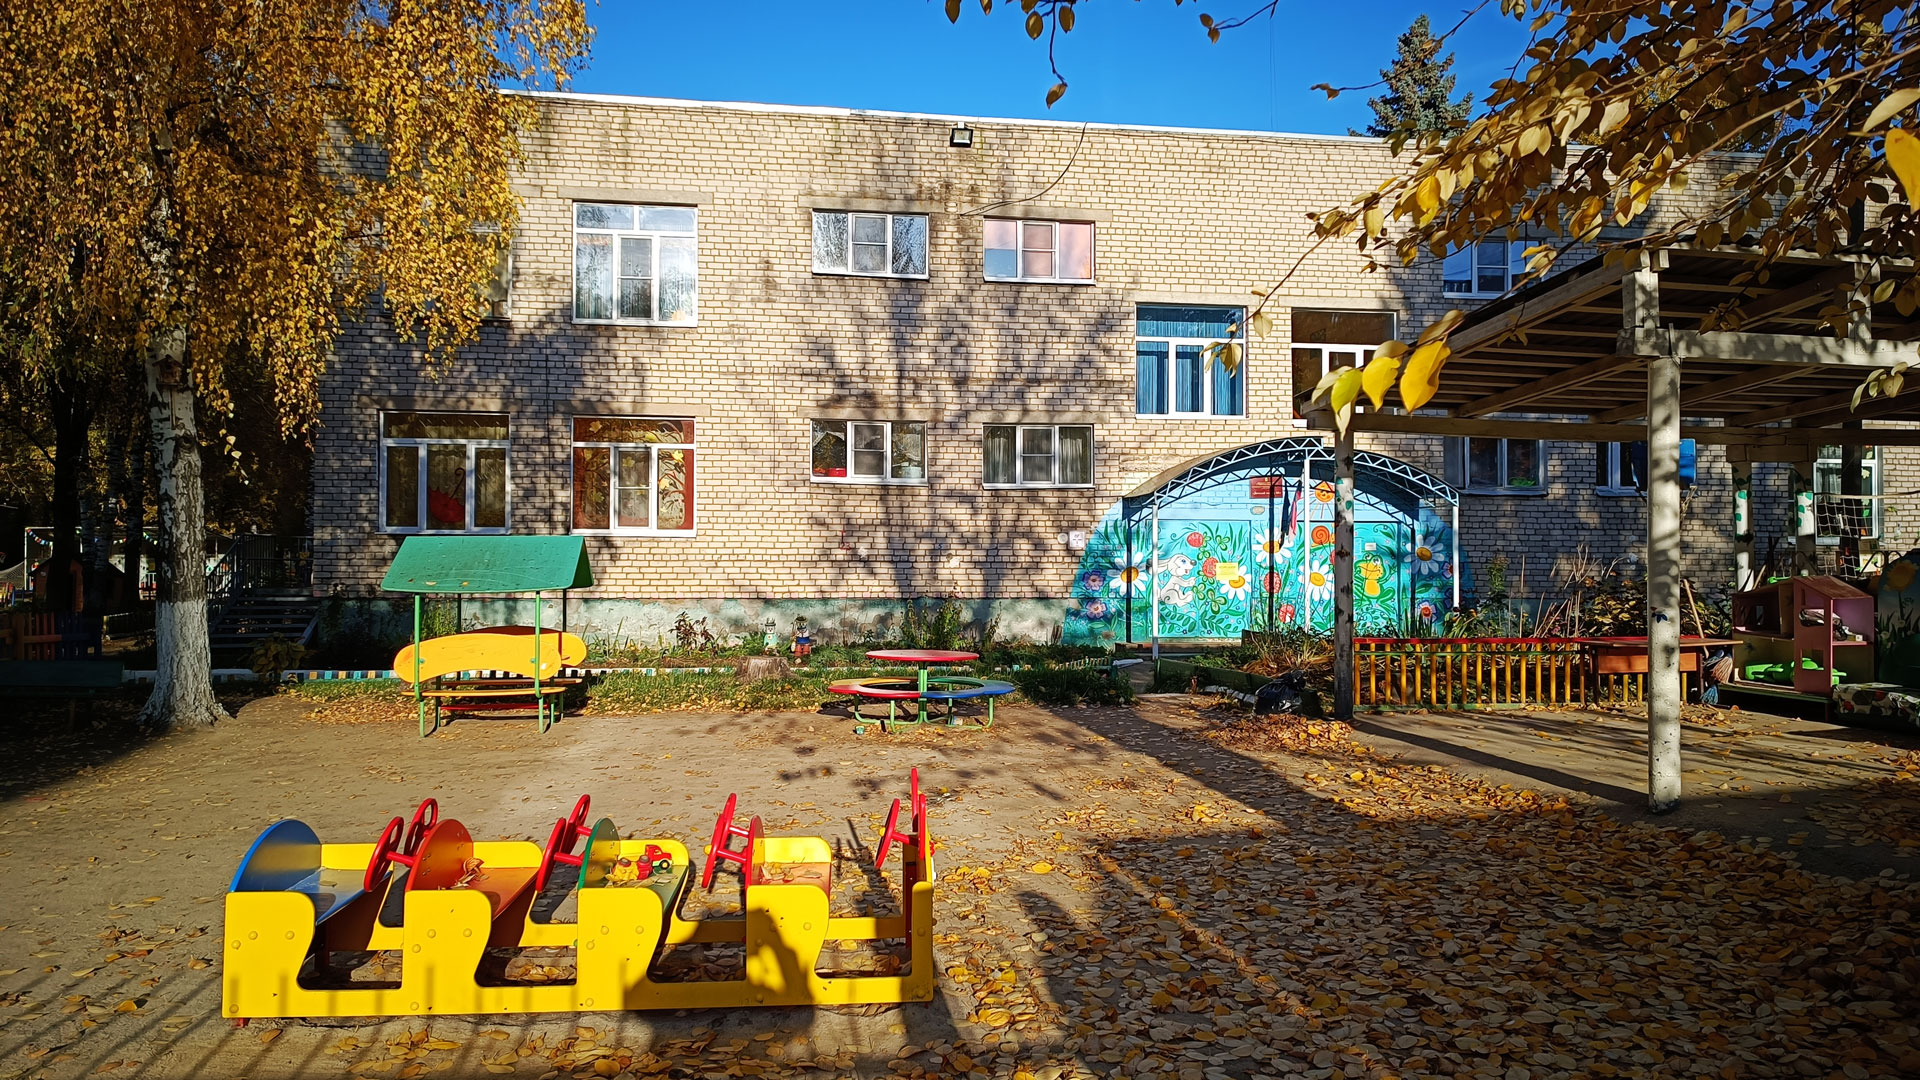 Детский сад 68 Ярославль: общий вид здания.